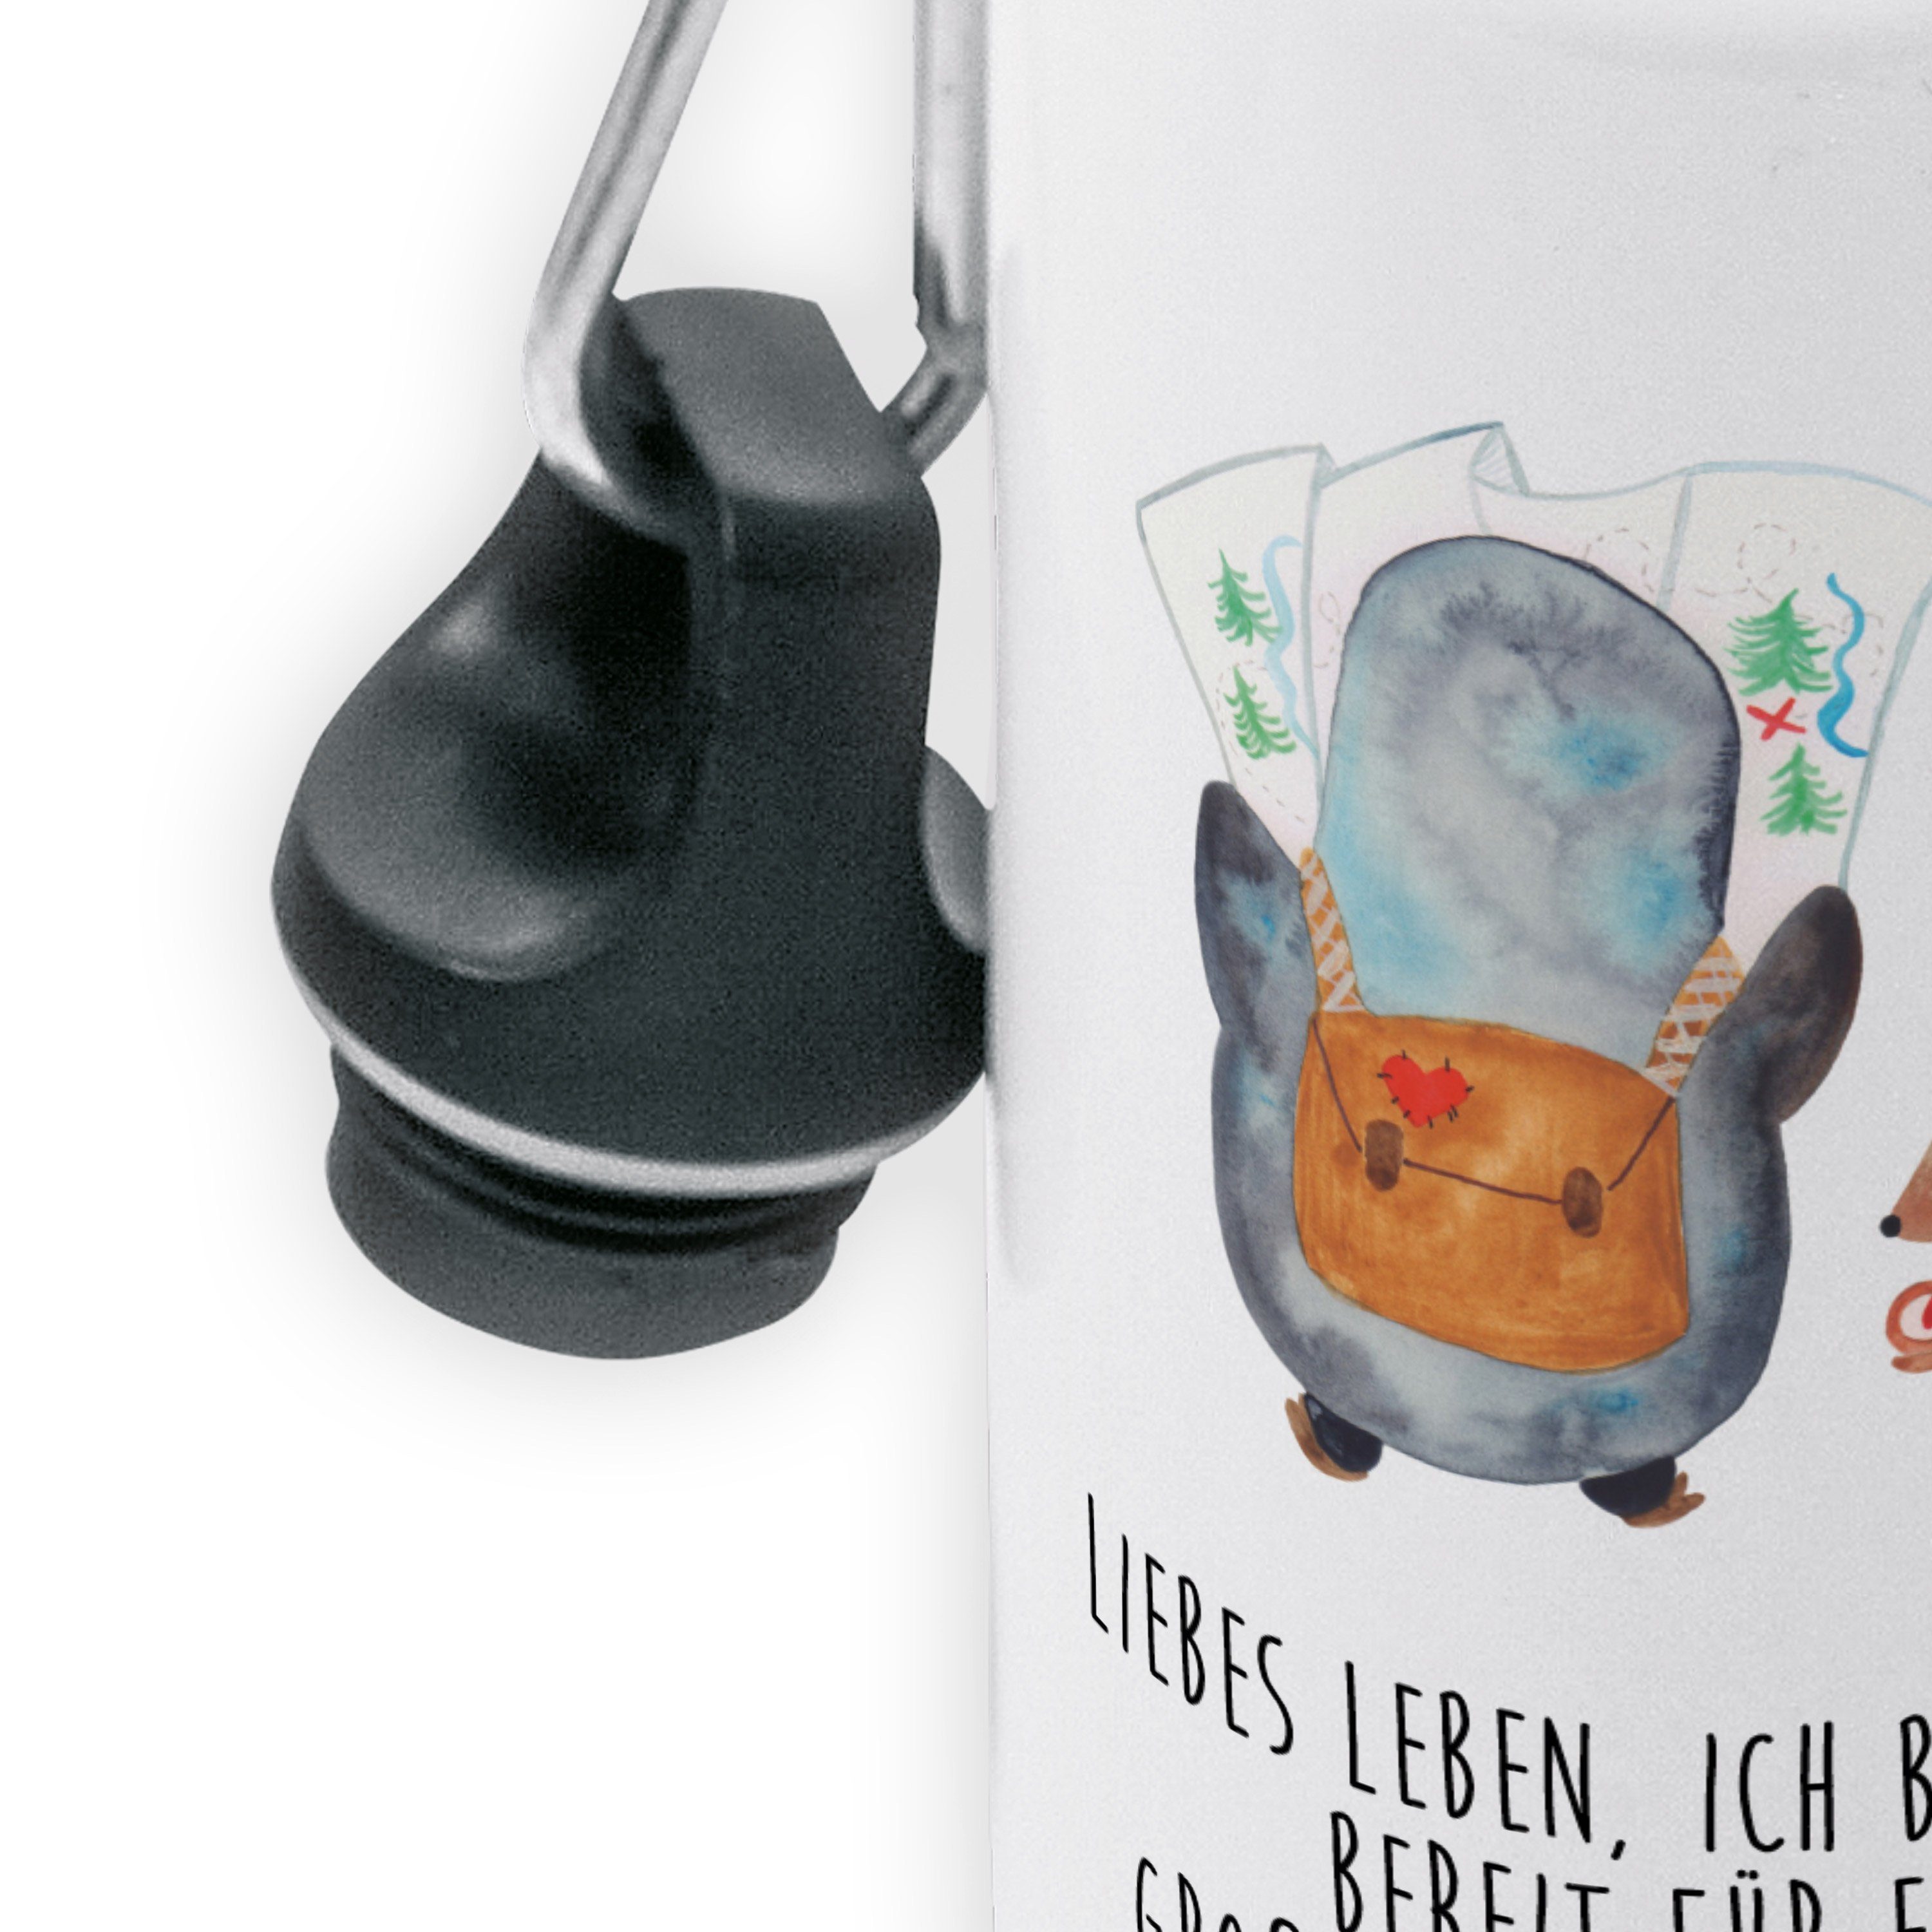 Kinderflasche Mr. Panda - Pinguin Geschenk, & Mrs. Maus Weiß Trinkflasche & Grundschule, Wanderer -